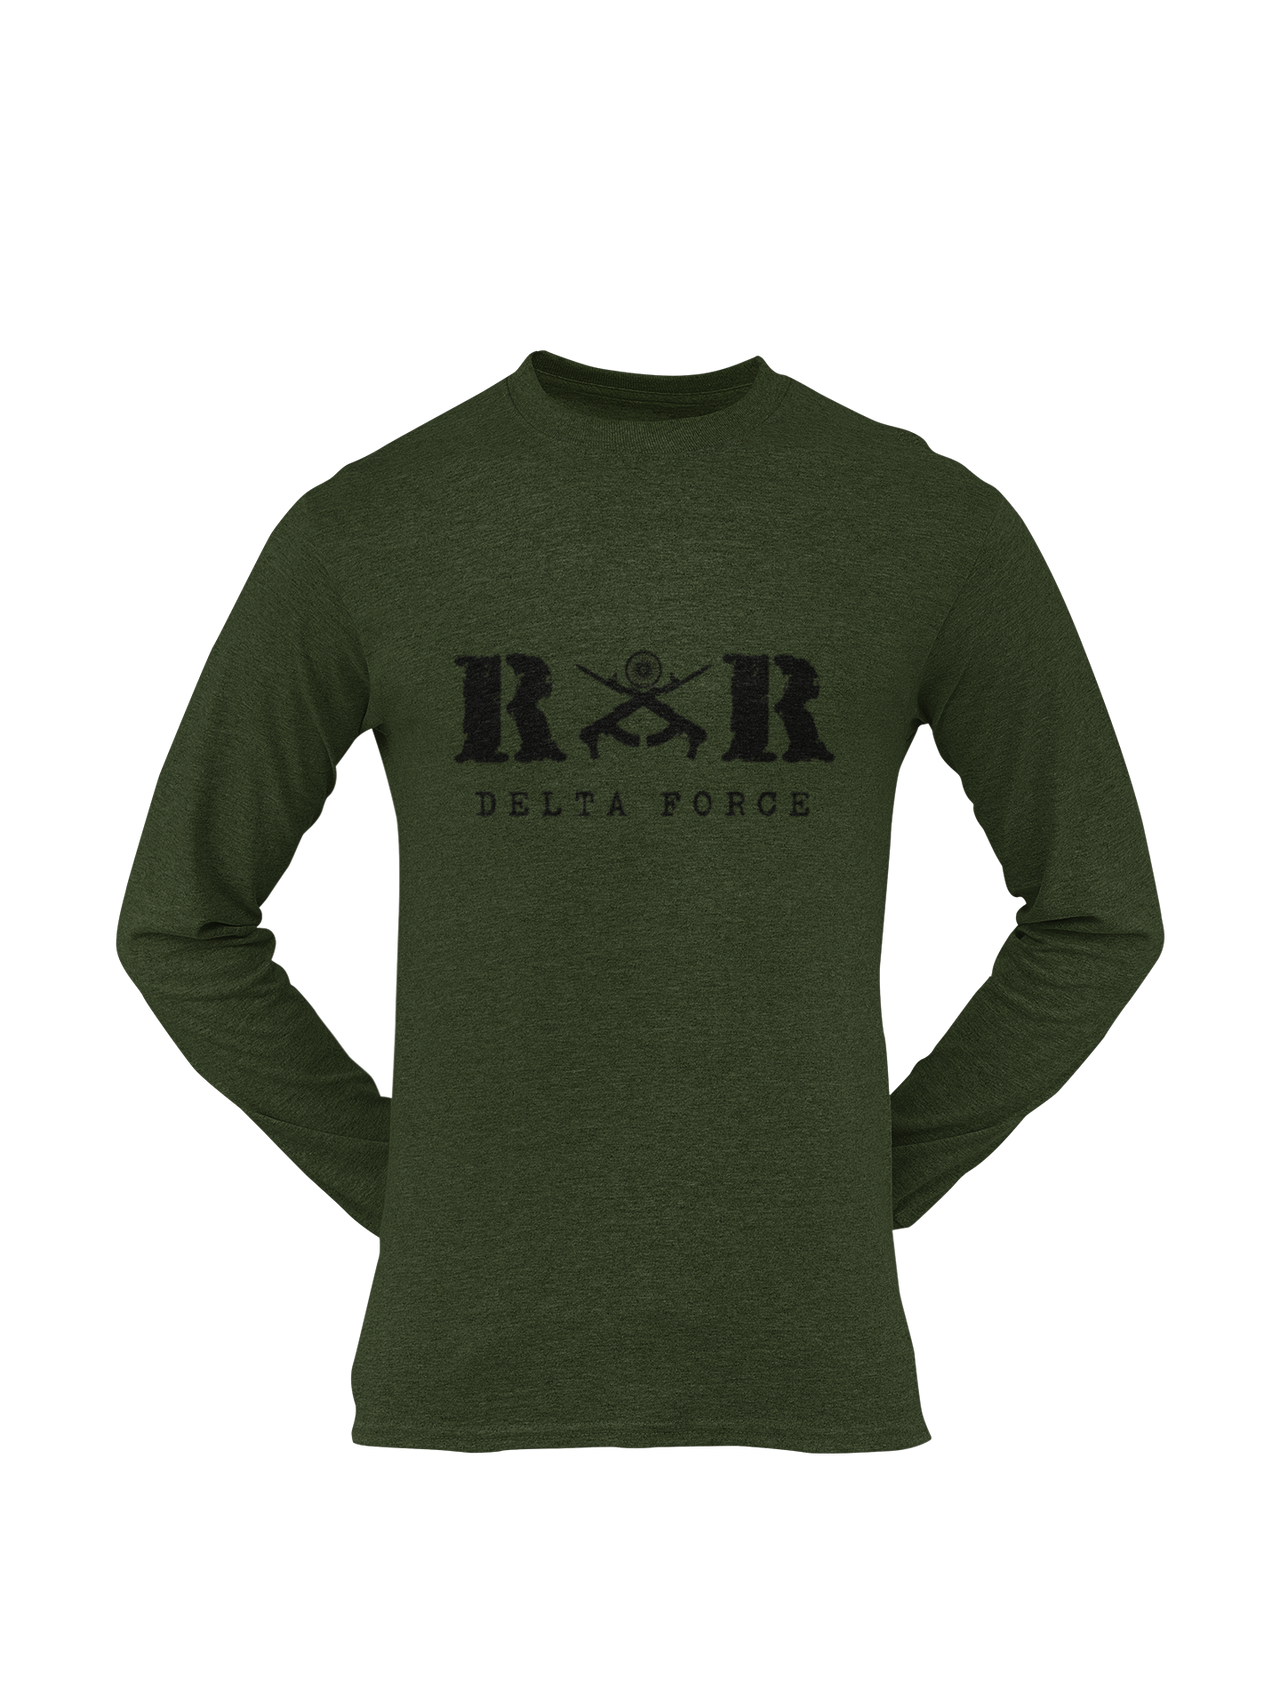 Rashtriya Rifles T-shirt - RR Delta Force ( Men)